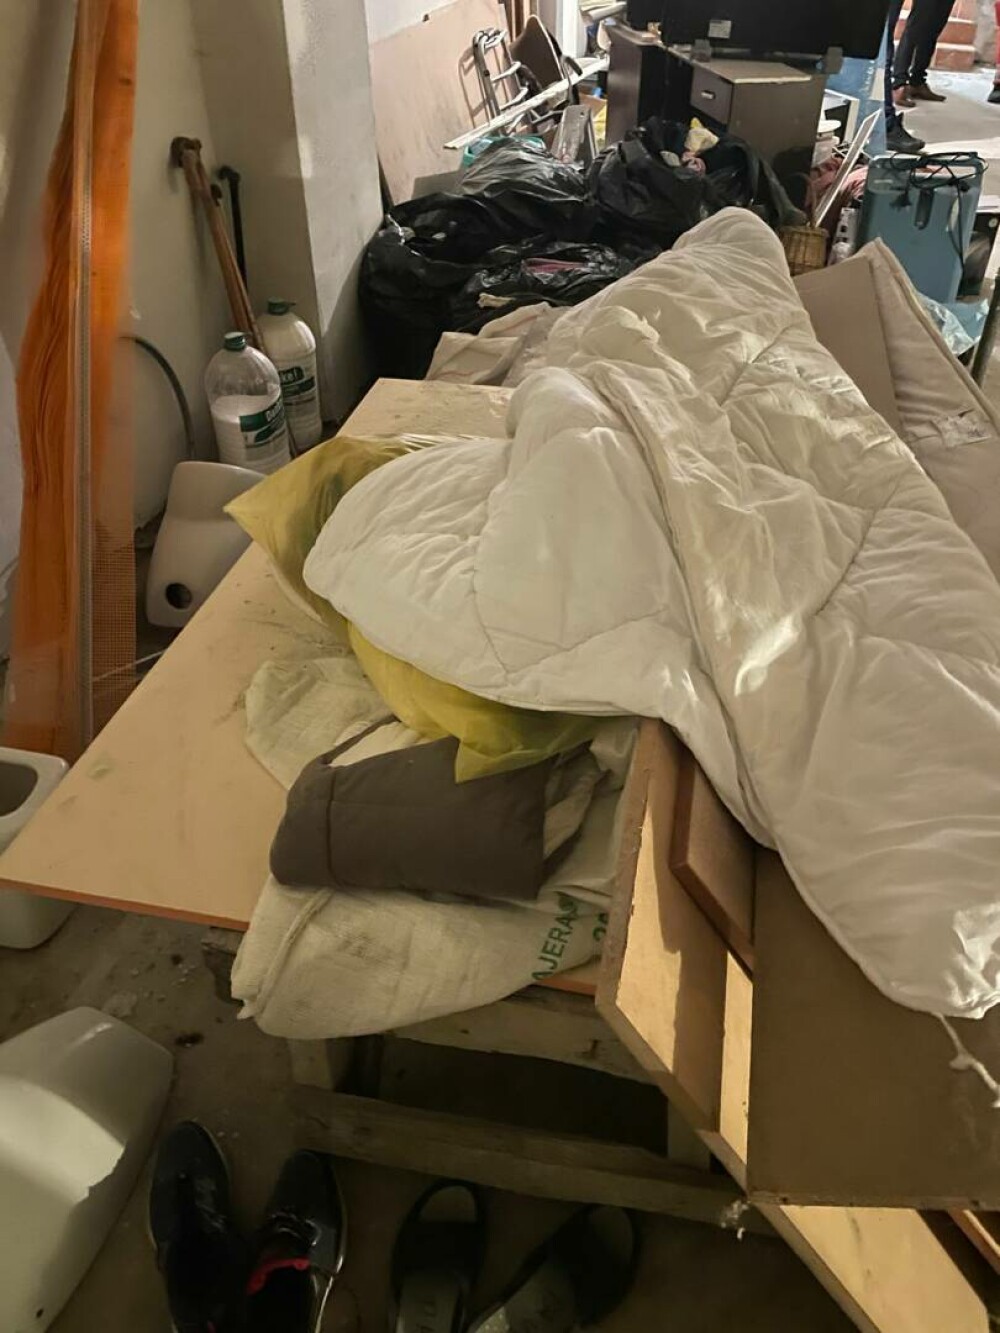 Imagini șocante dintr-un nou „azil al groazei”. 7 persoane, ținute în condiții insalubre în subsolul unui centru din Mureș - Imaginea 7